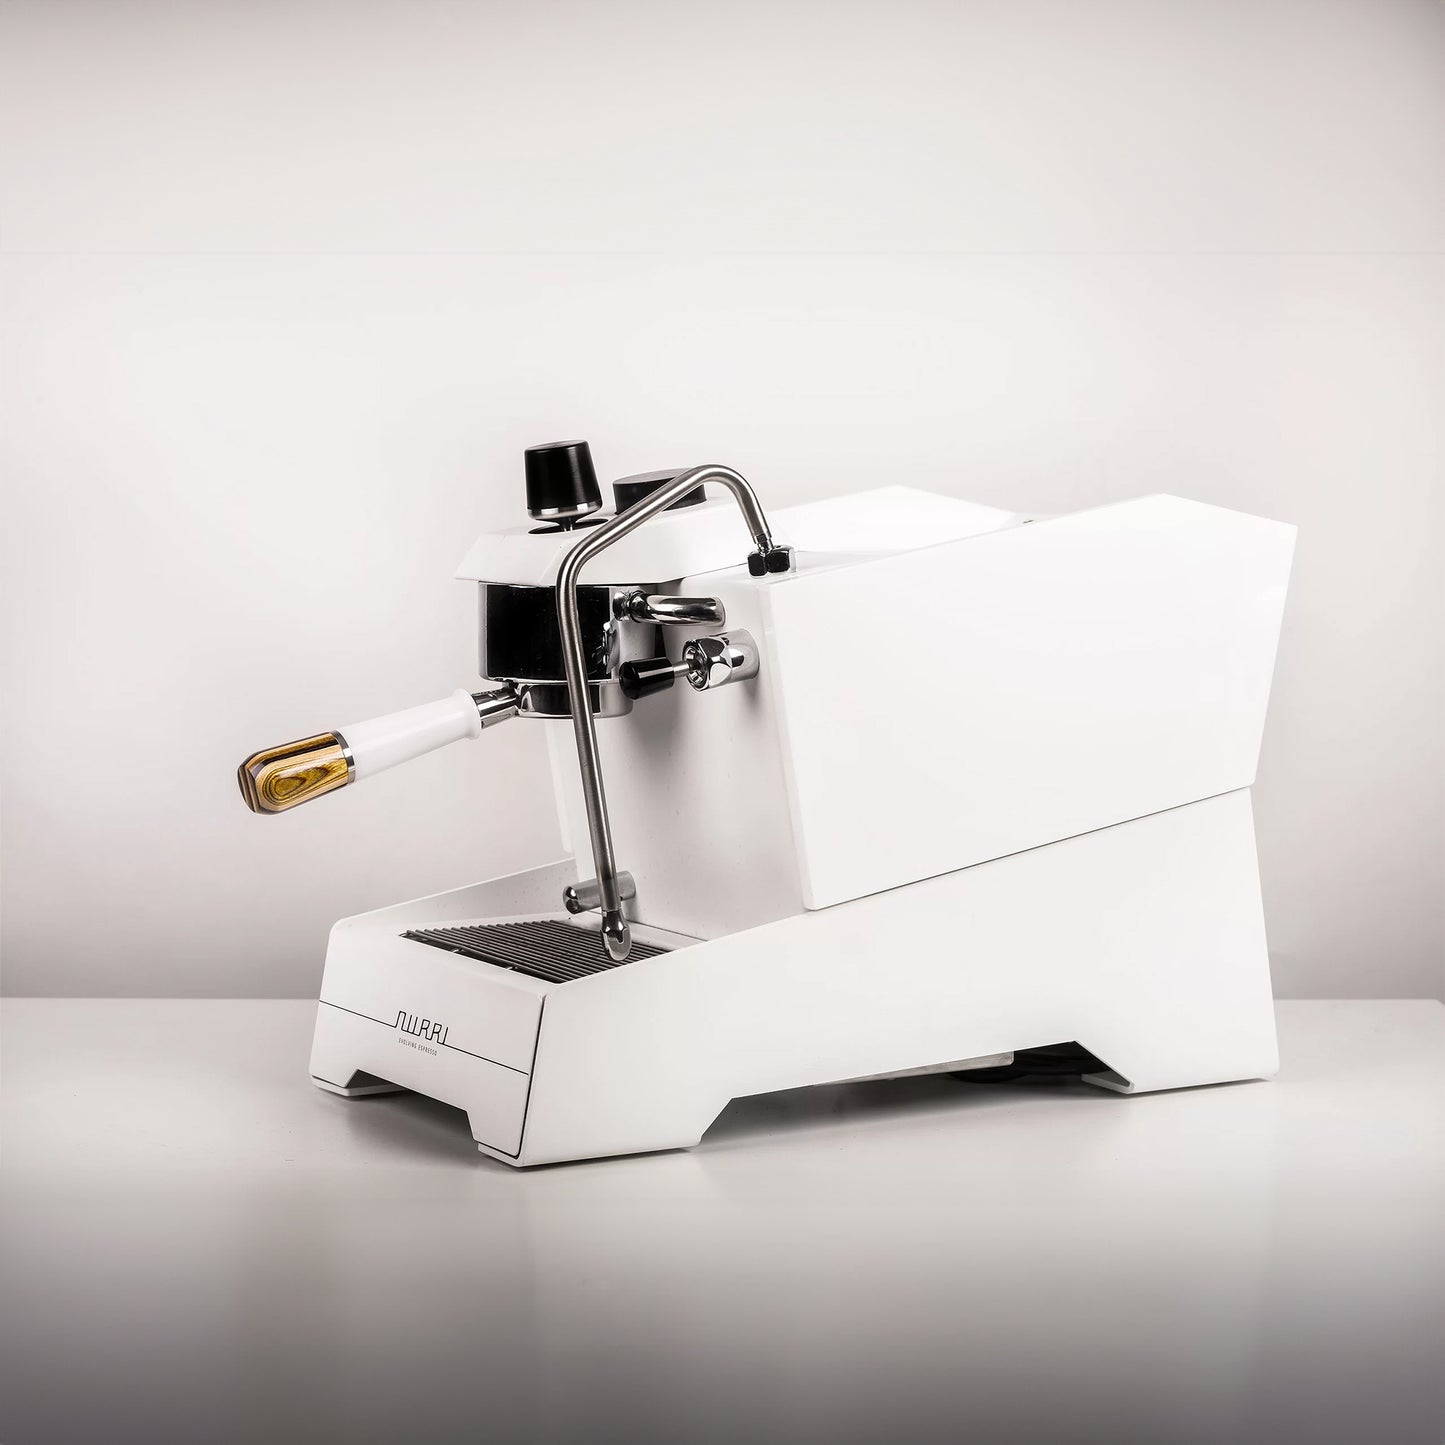 Nurri R Type Espresso Machine